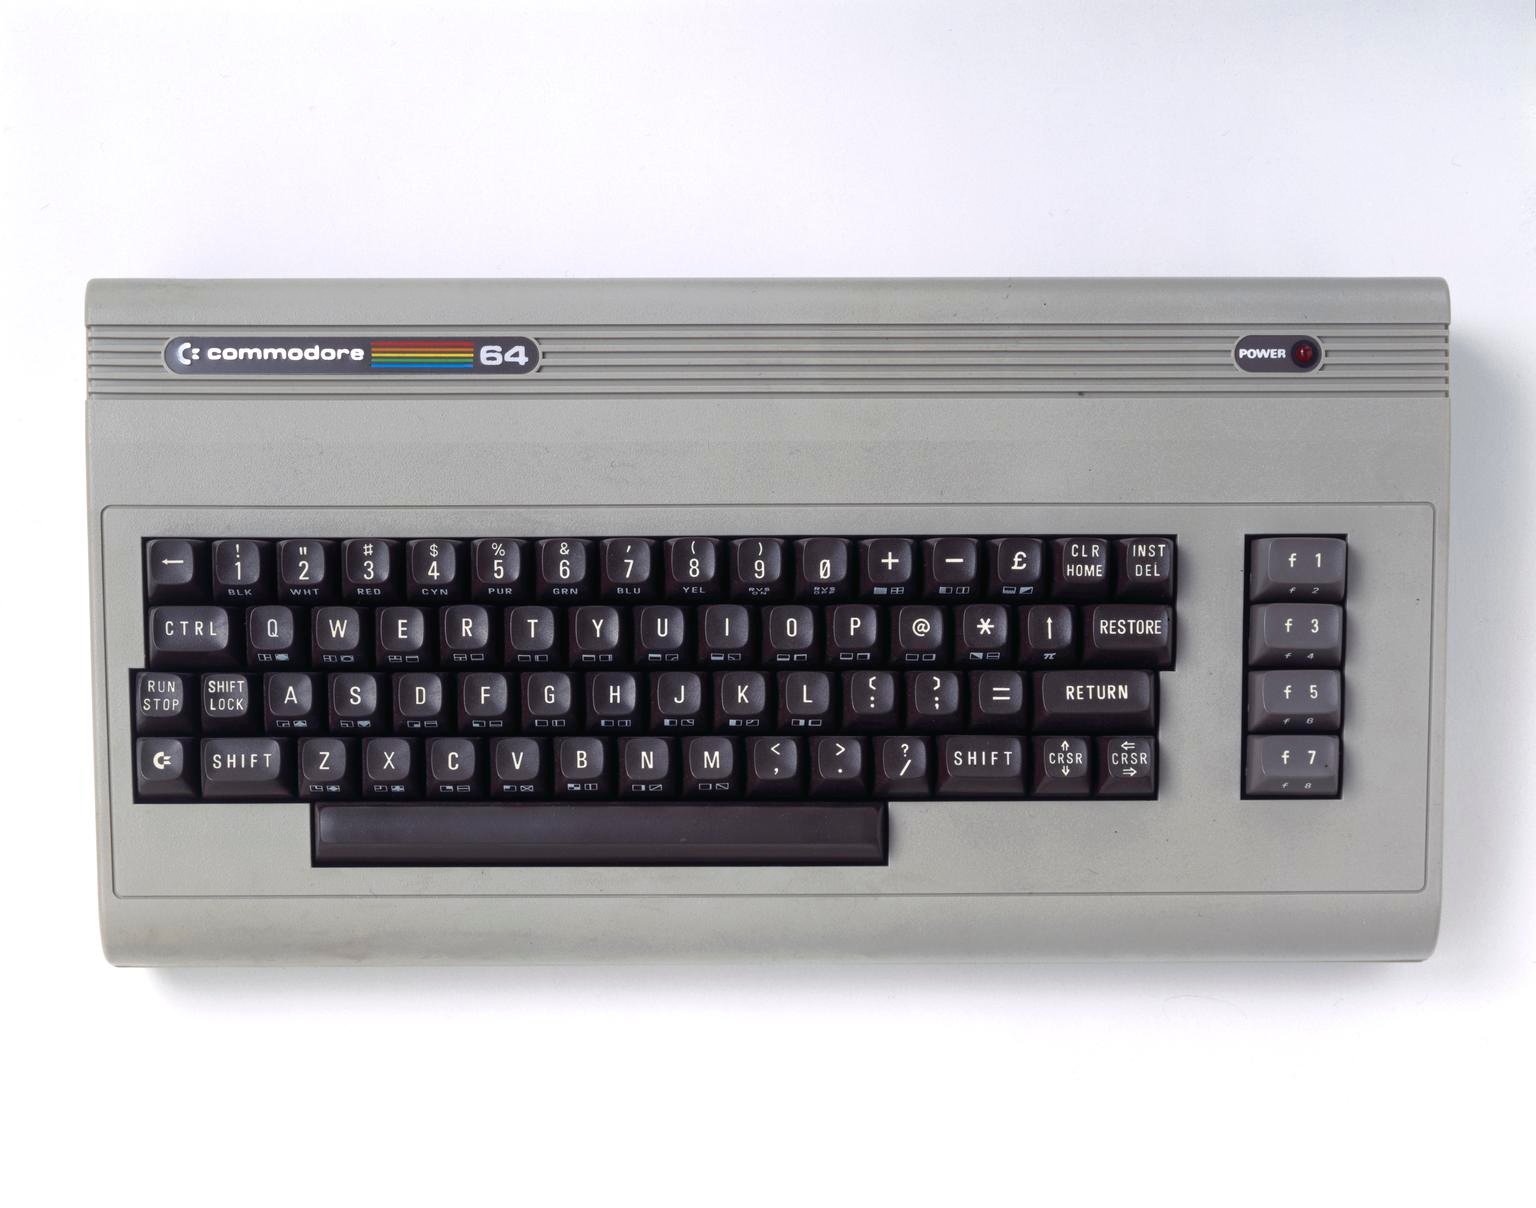 Commodore 64 microcomputer, 1982-1985 (personal computer)